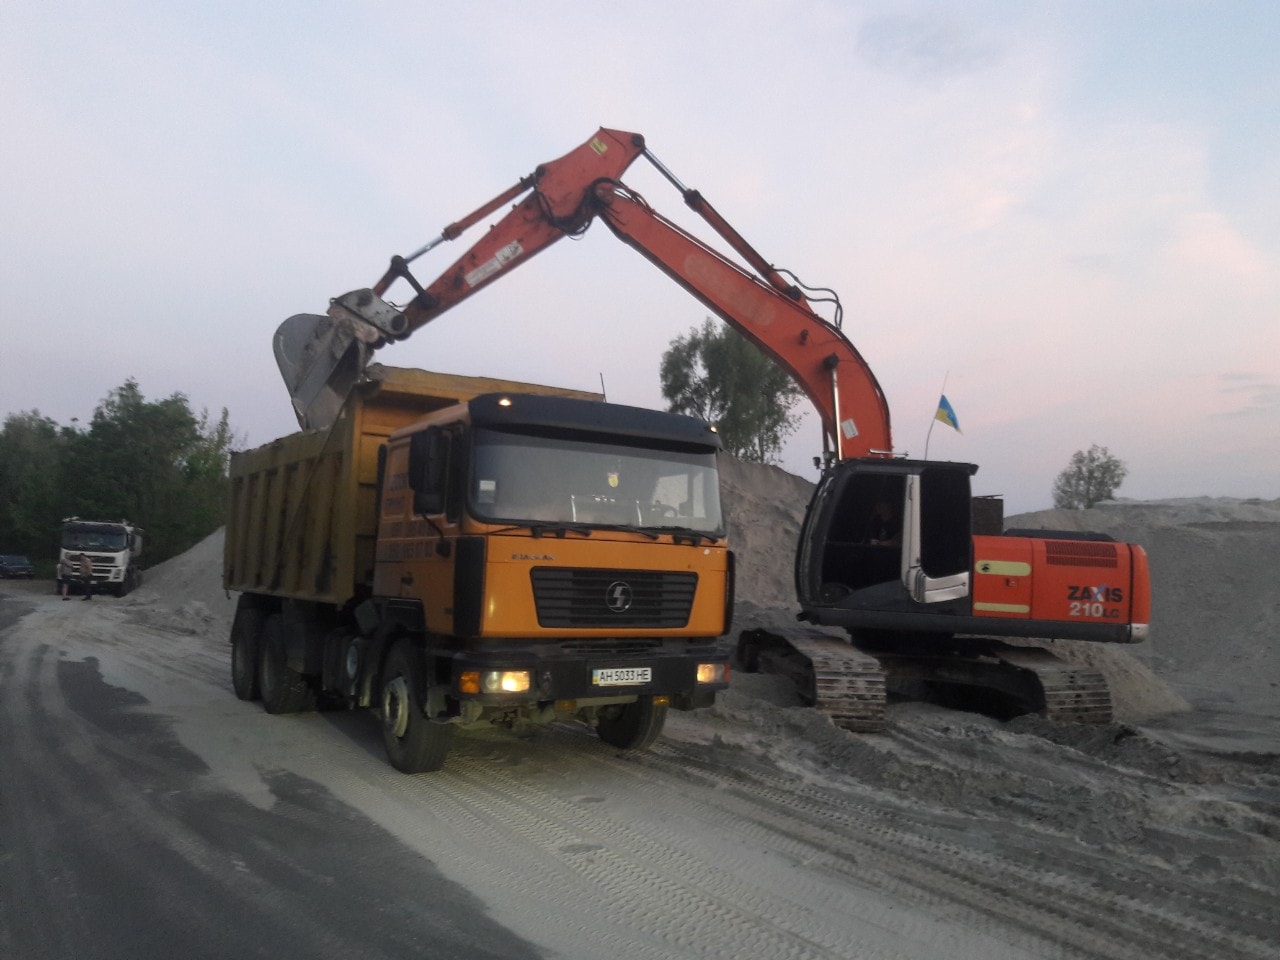 Активисты предотвратили вывоз песка из озера Алмазное в Деснянском районе Киева (фото, видео)